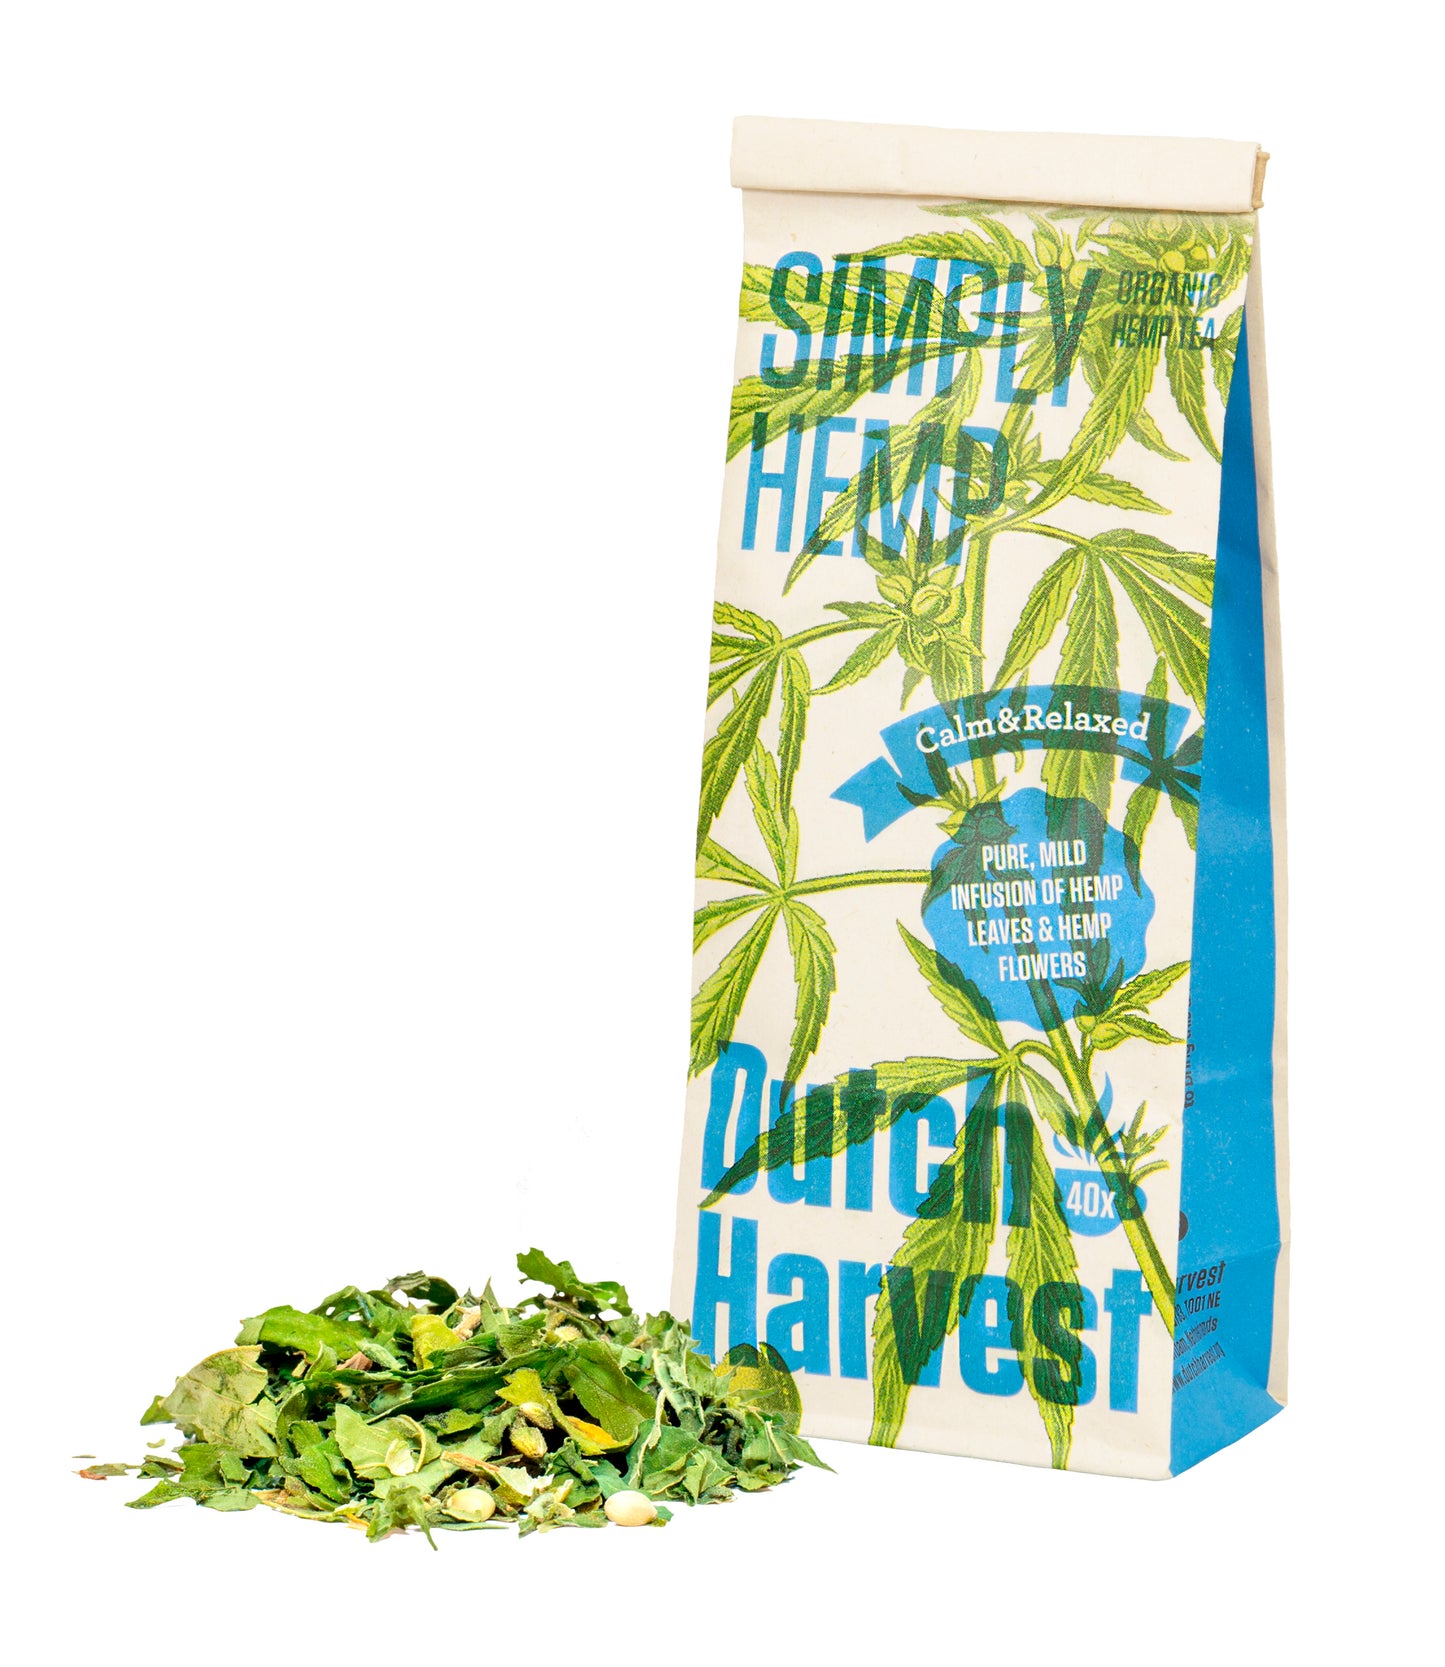 (5 pack bundle) Dutch Harvest - Hemp tea - Organic loose leaves